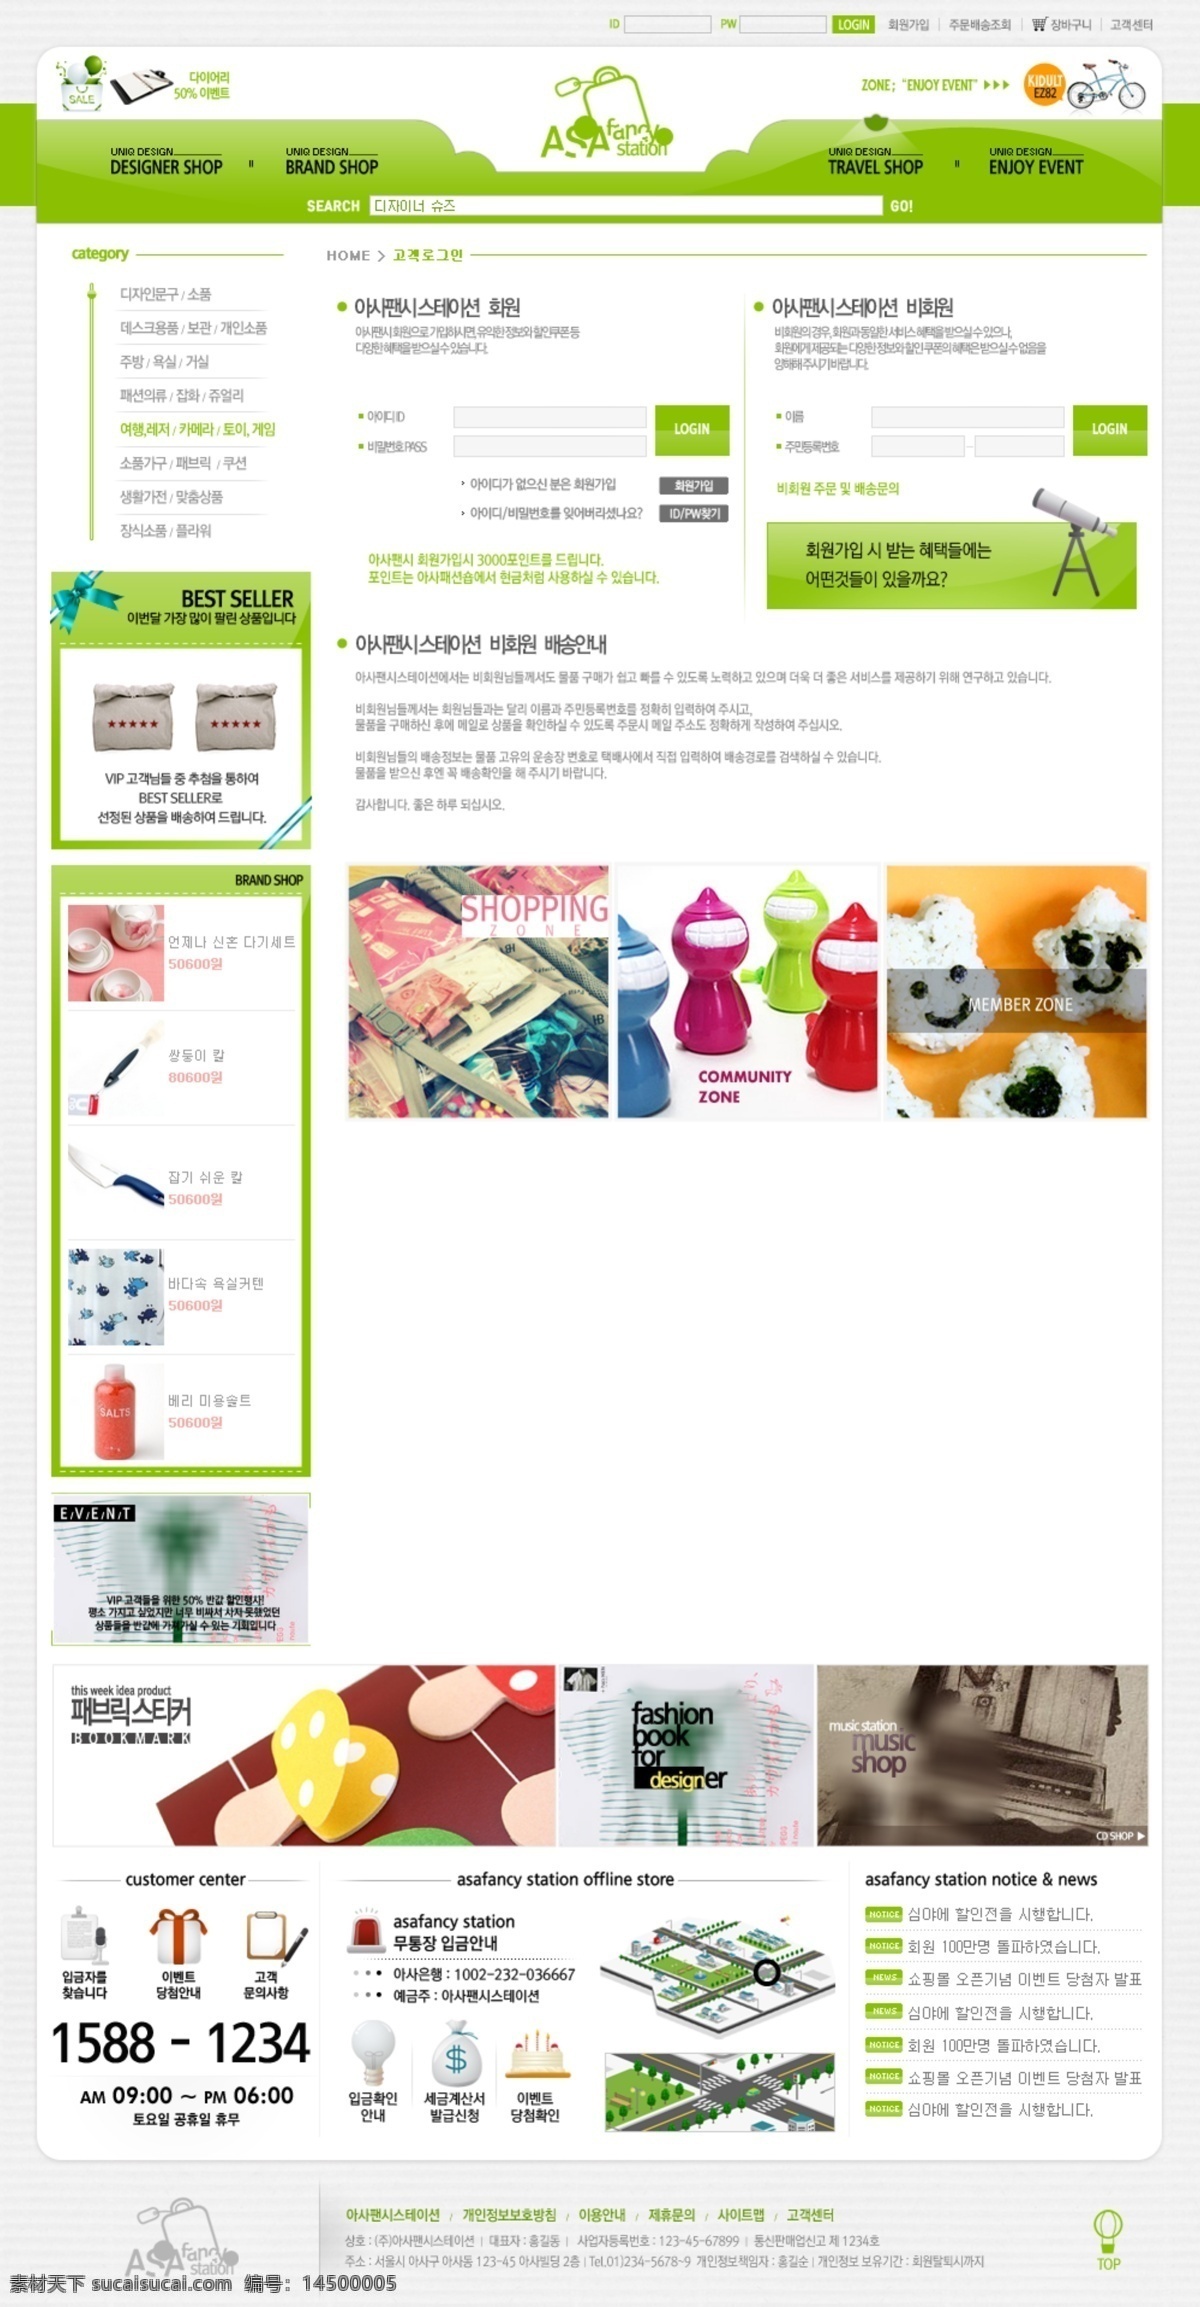 网页素材 韩版网页 企业网页 校园网 分层网页素材 韩国时尚网页 web 界面设计 韩文模板 白色